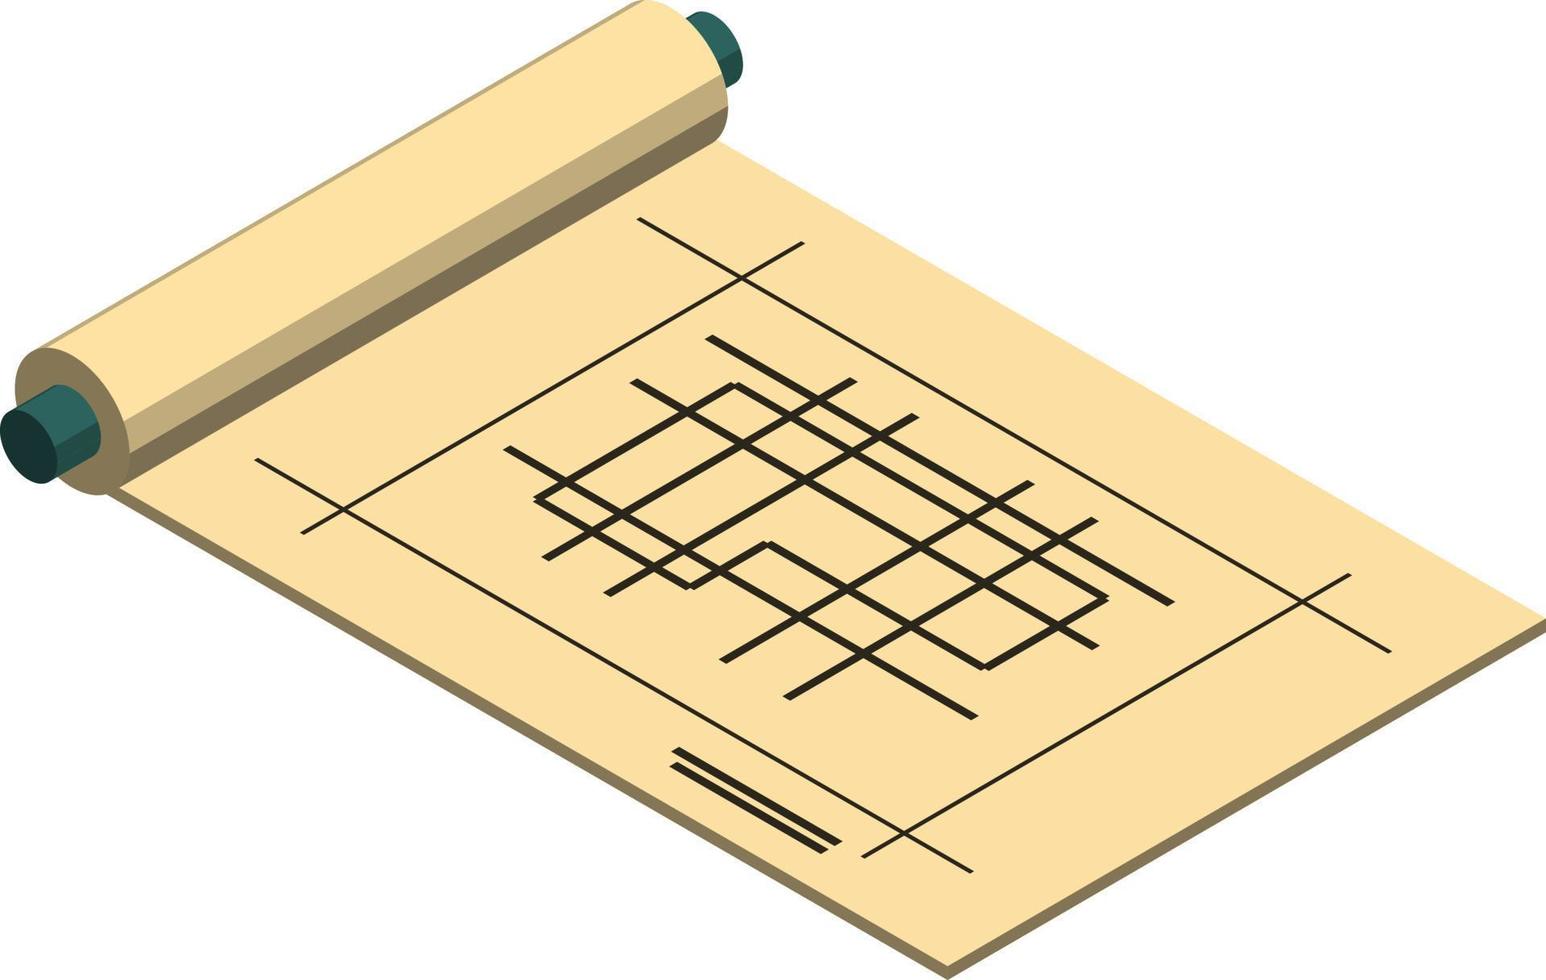 hausbauplanillustration im isometrischen stil 3d vektor